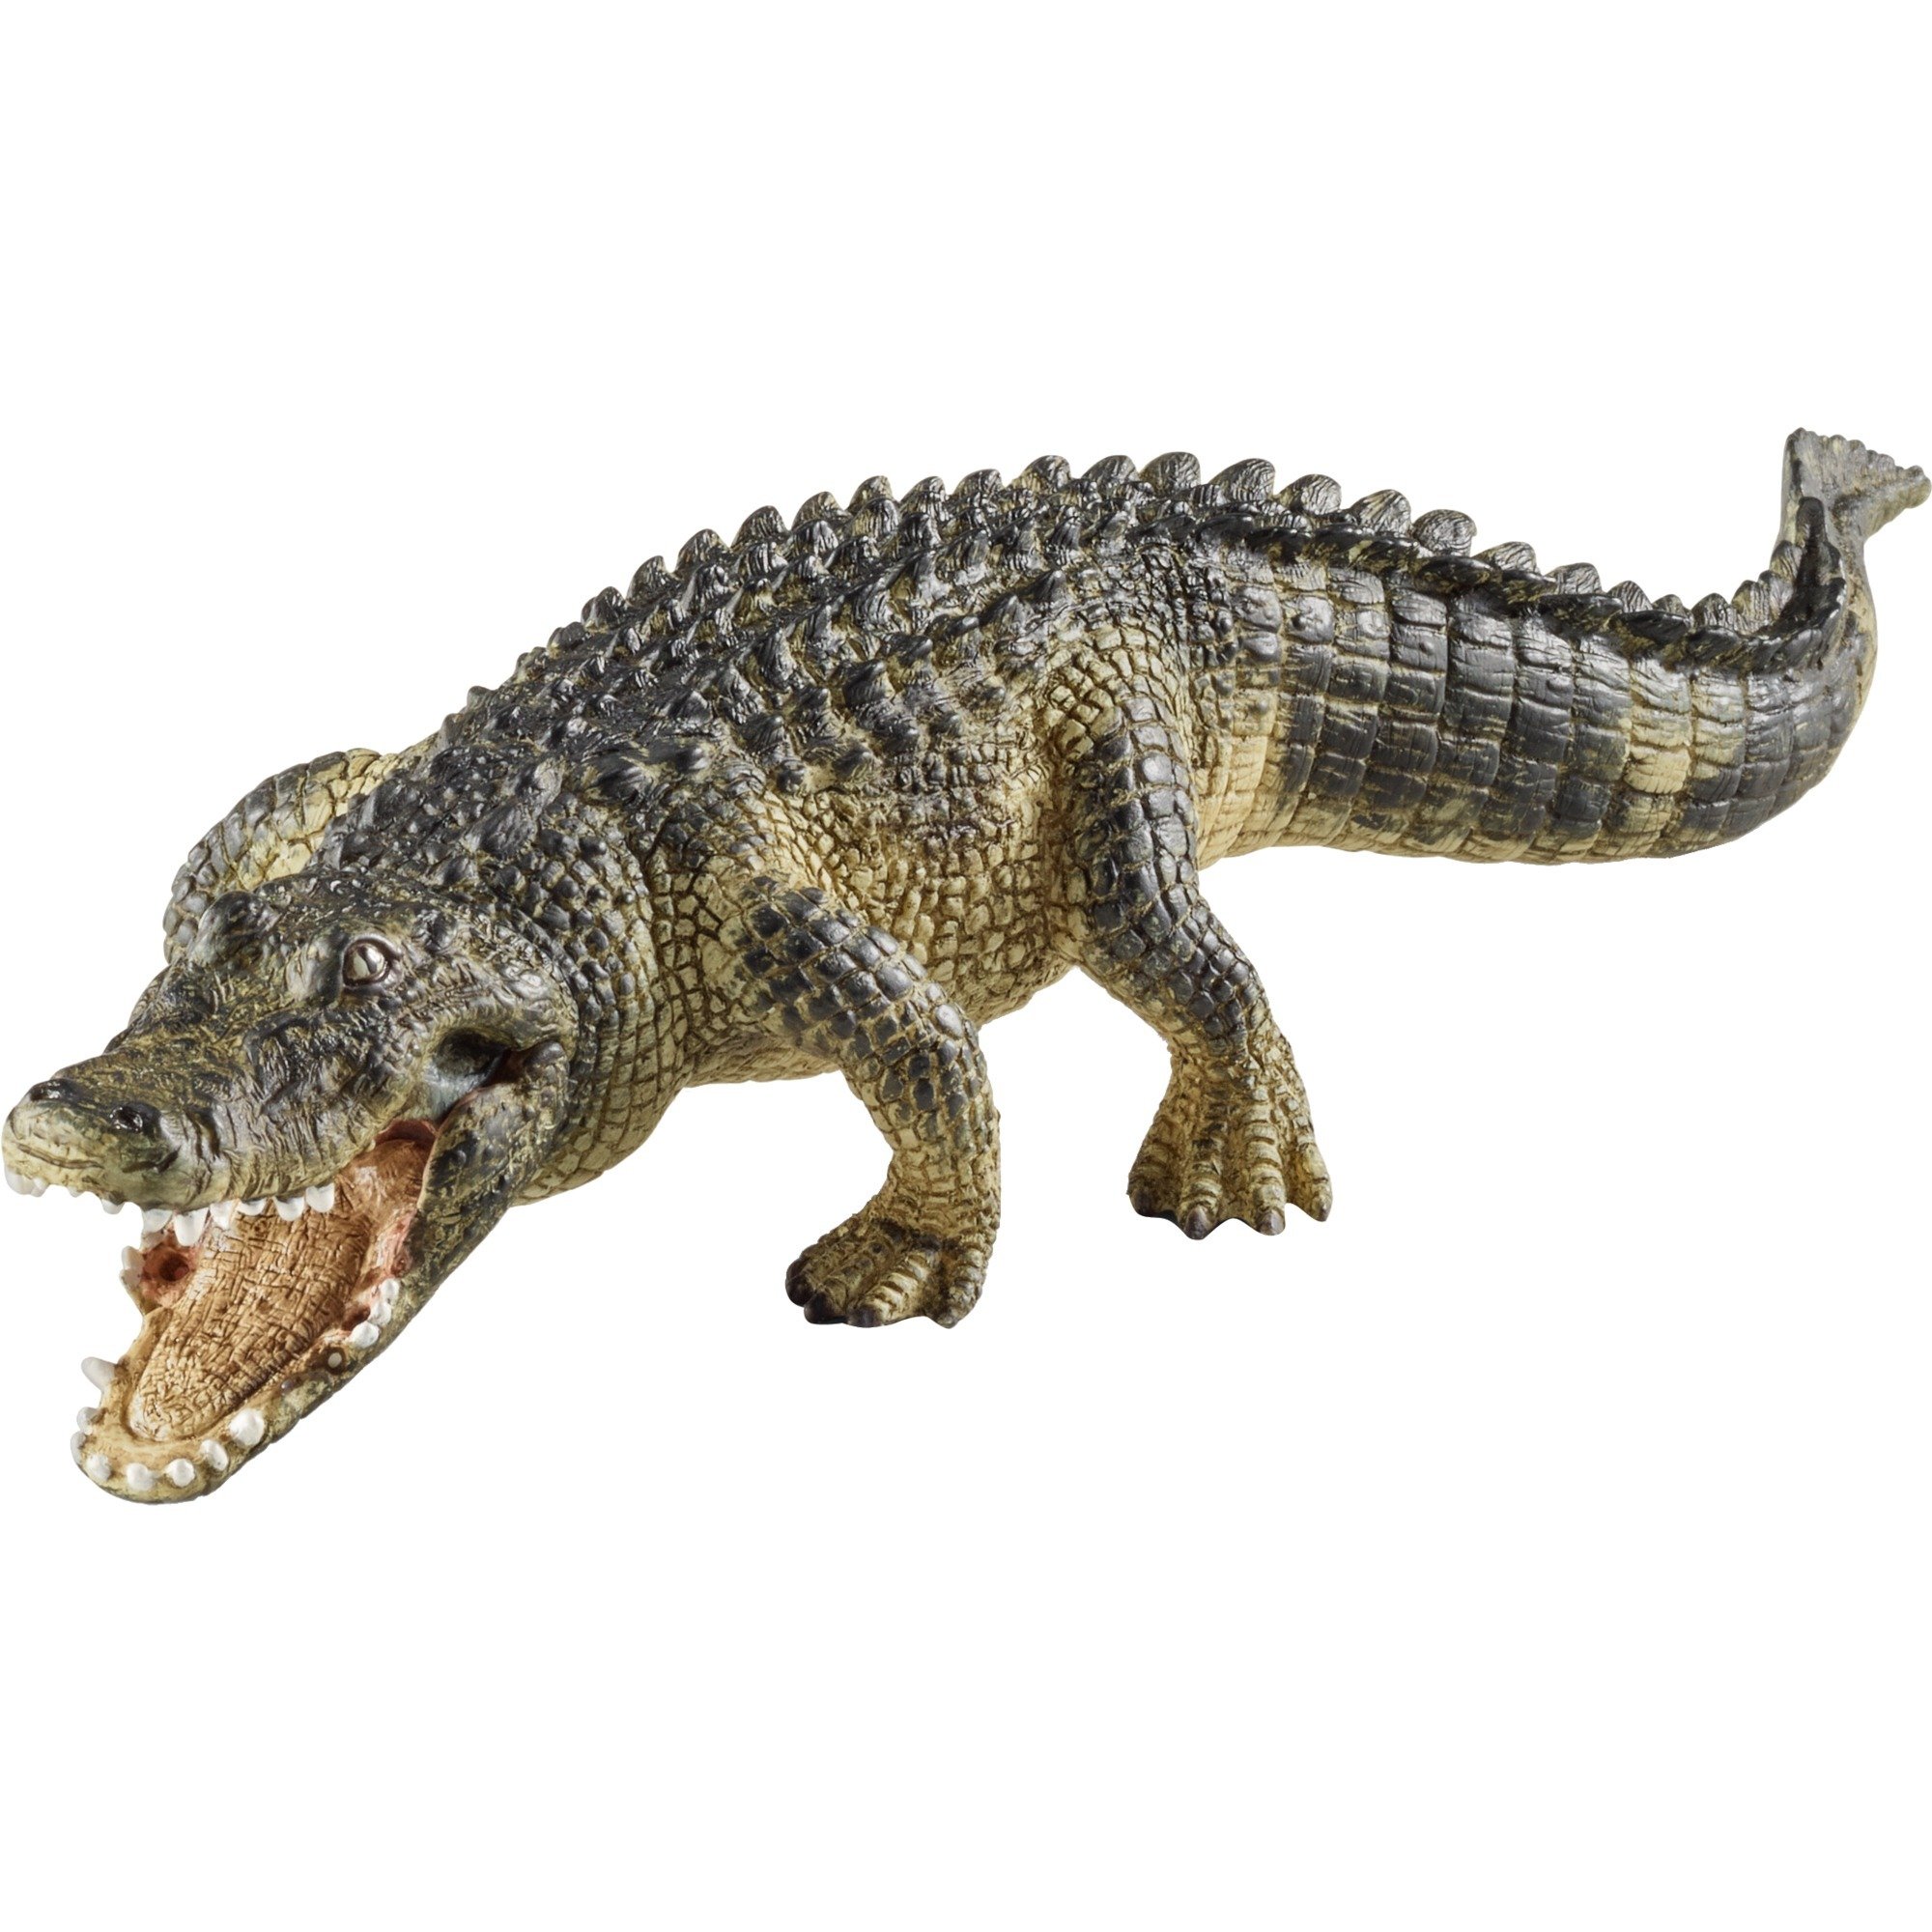 Image of Alternate - Alligator, Spielfigur online einkaufen bei Alternate